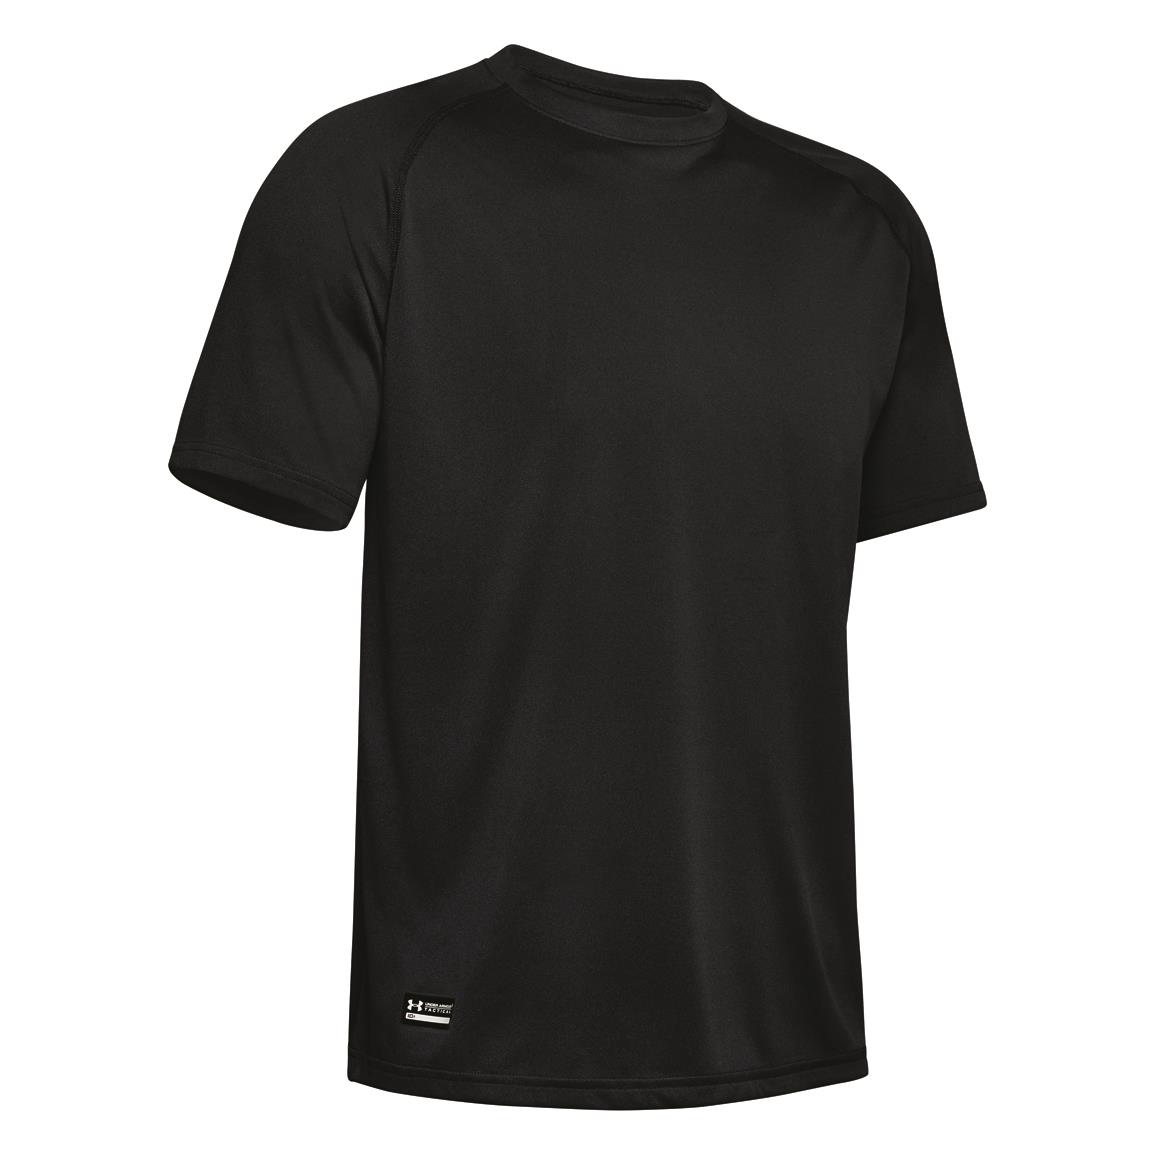 Condor Maxfort Long-sleeved Training Shirt - 729914, T-Shirts at ...